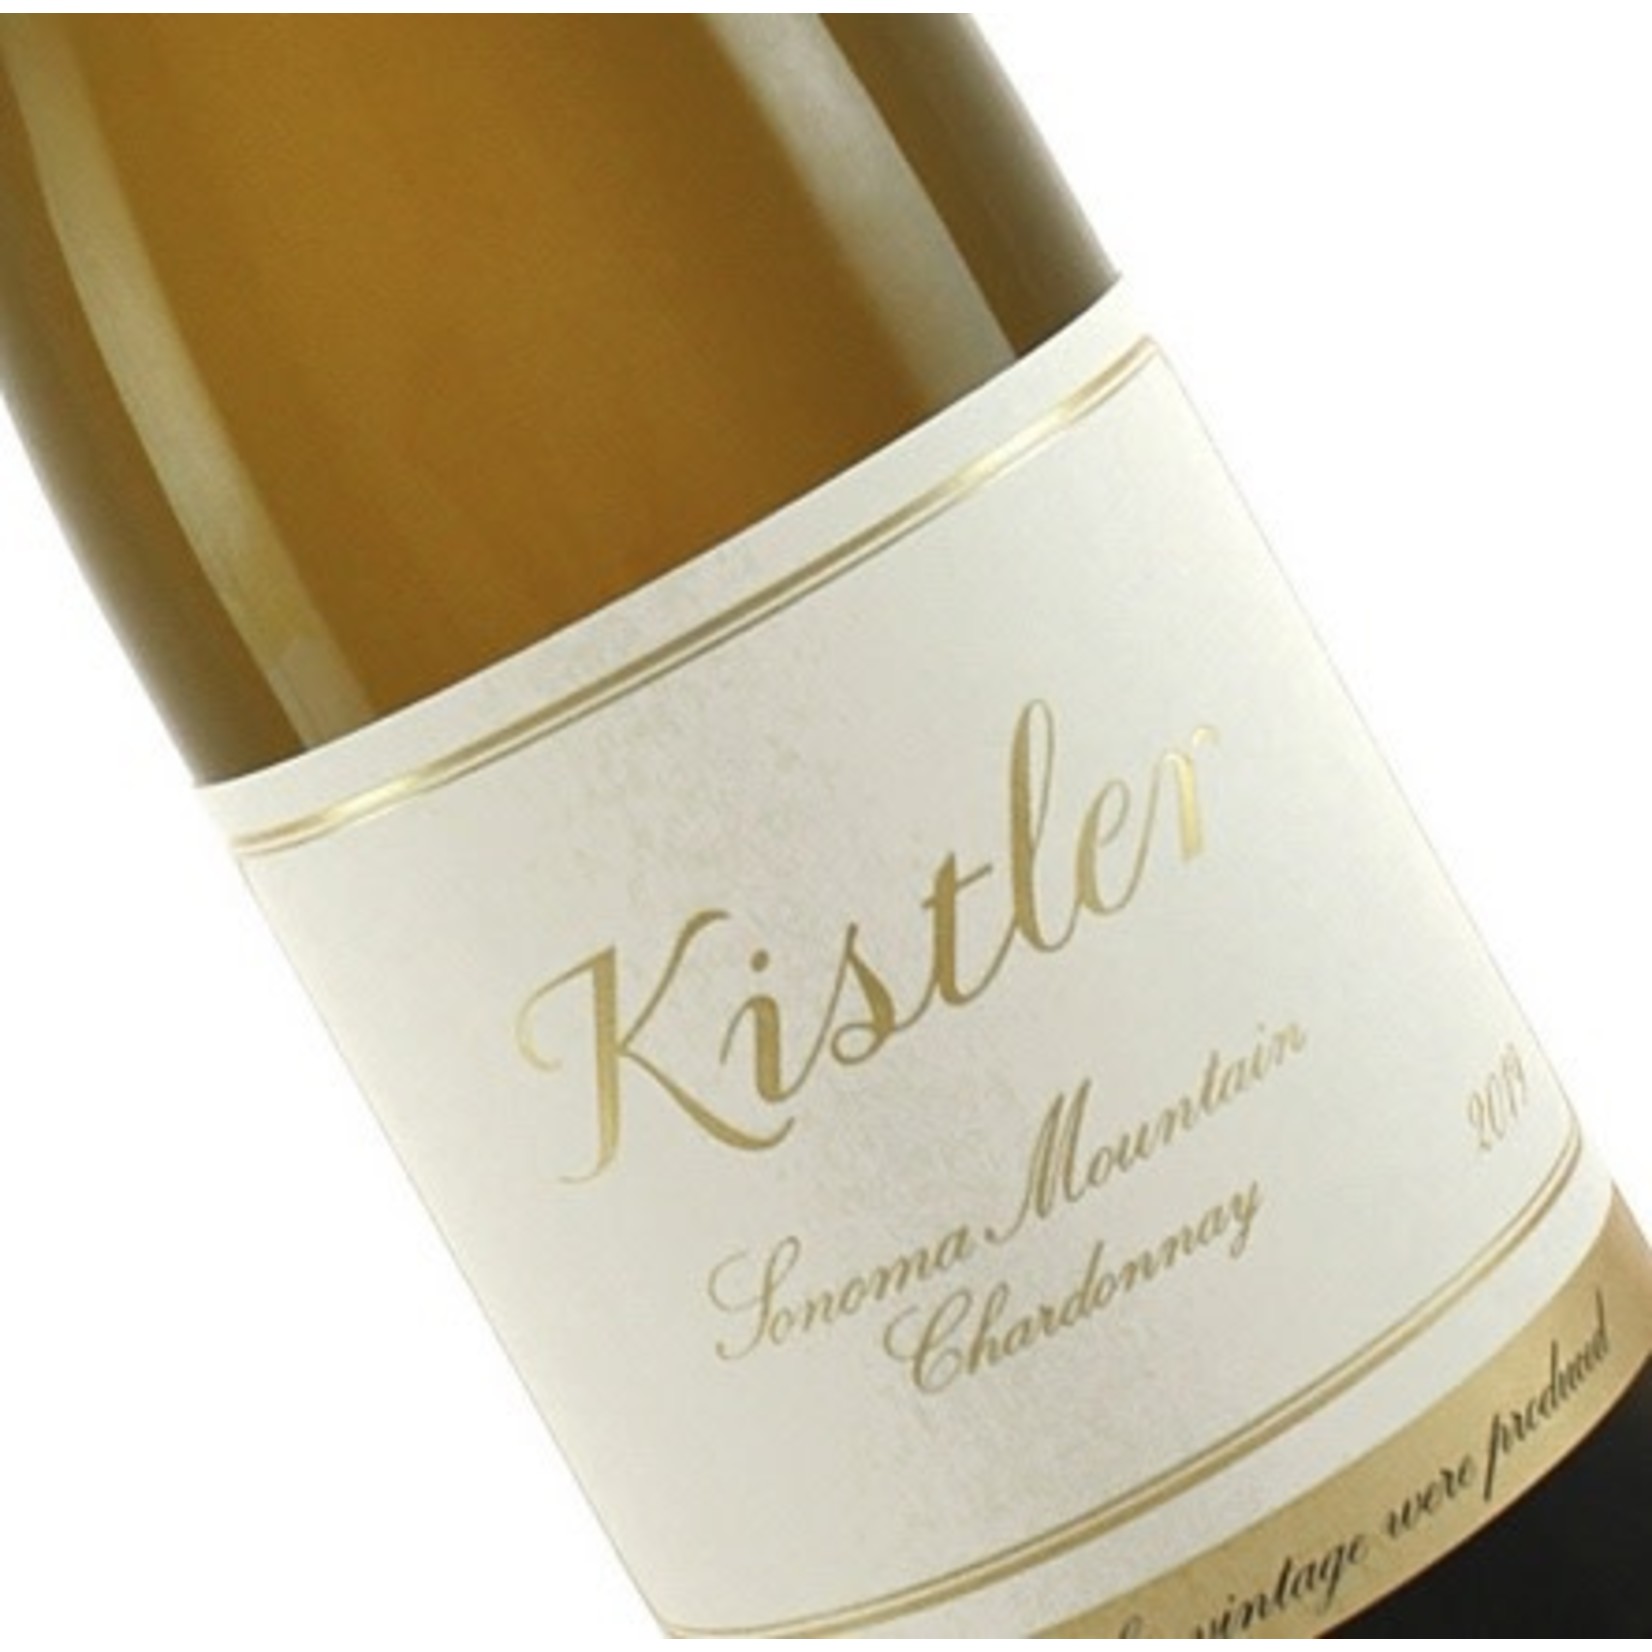 Wine Kistler Chardonnay Sonoma Mountain 2021